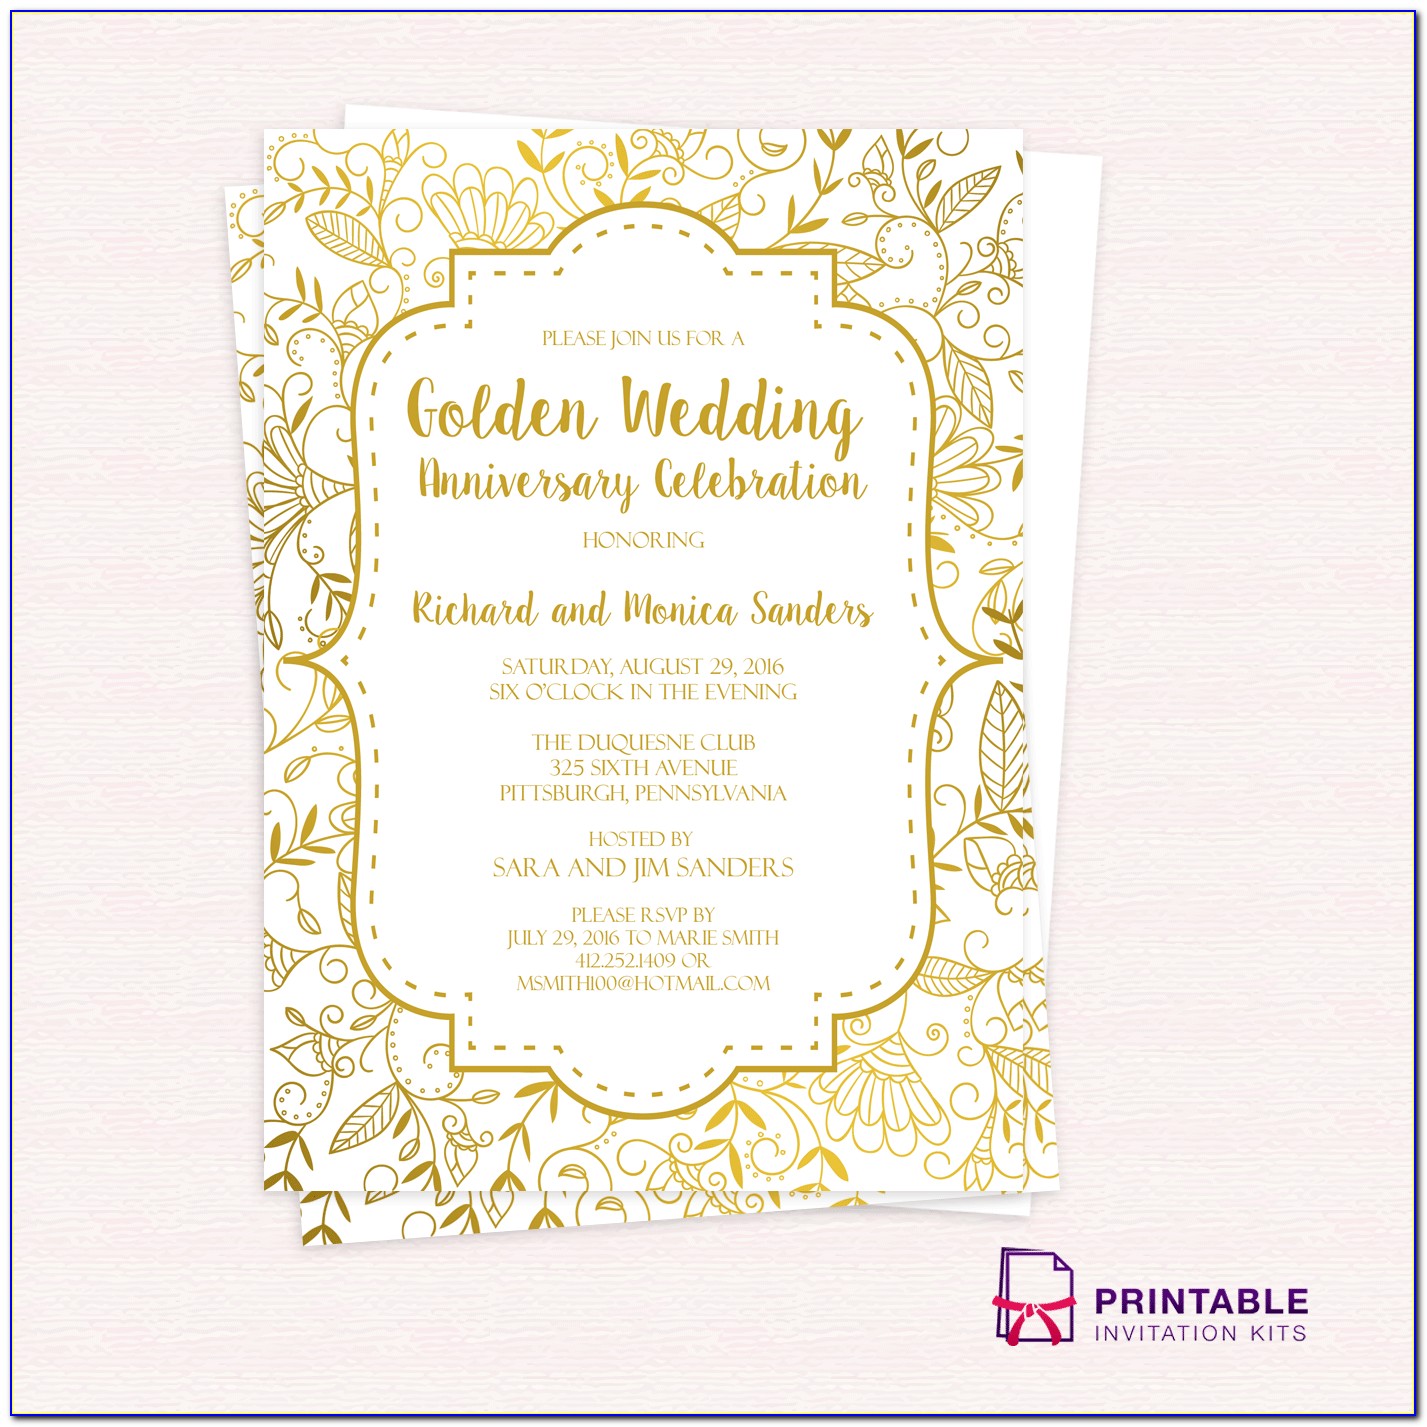 Golden Wedding Invitation Format